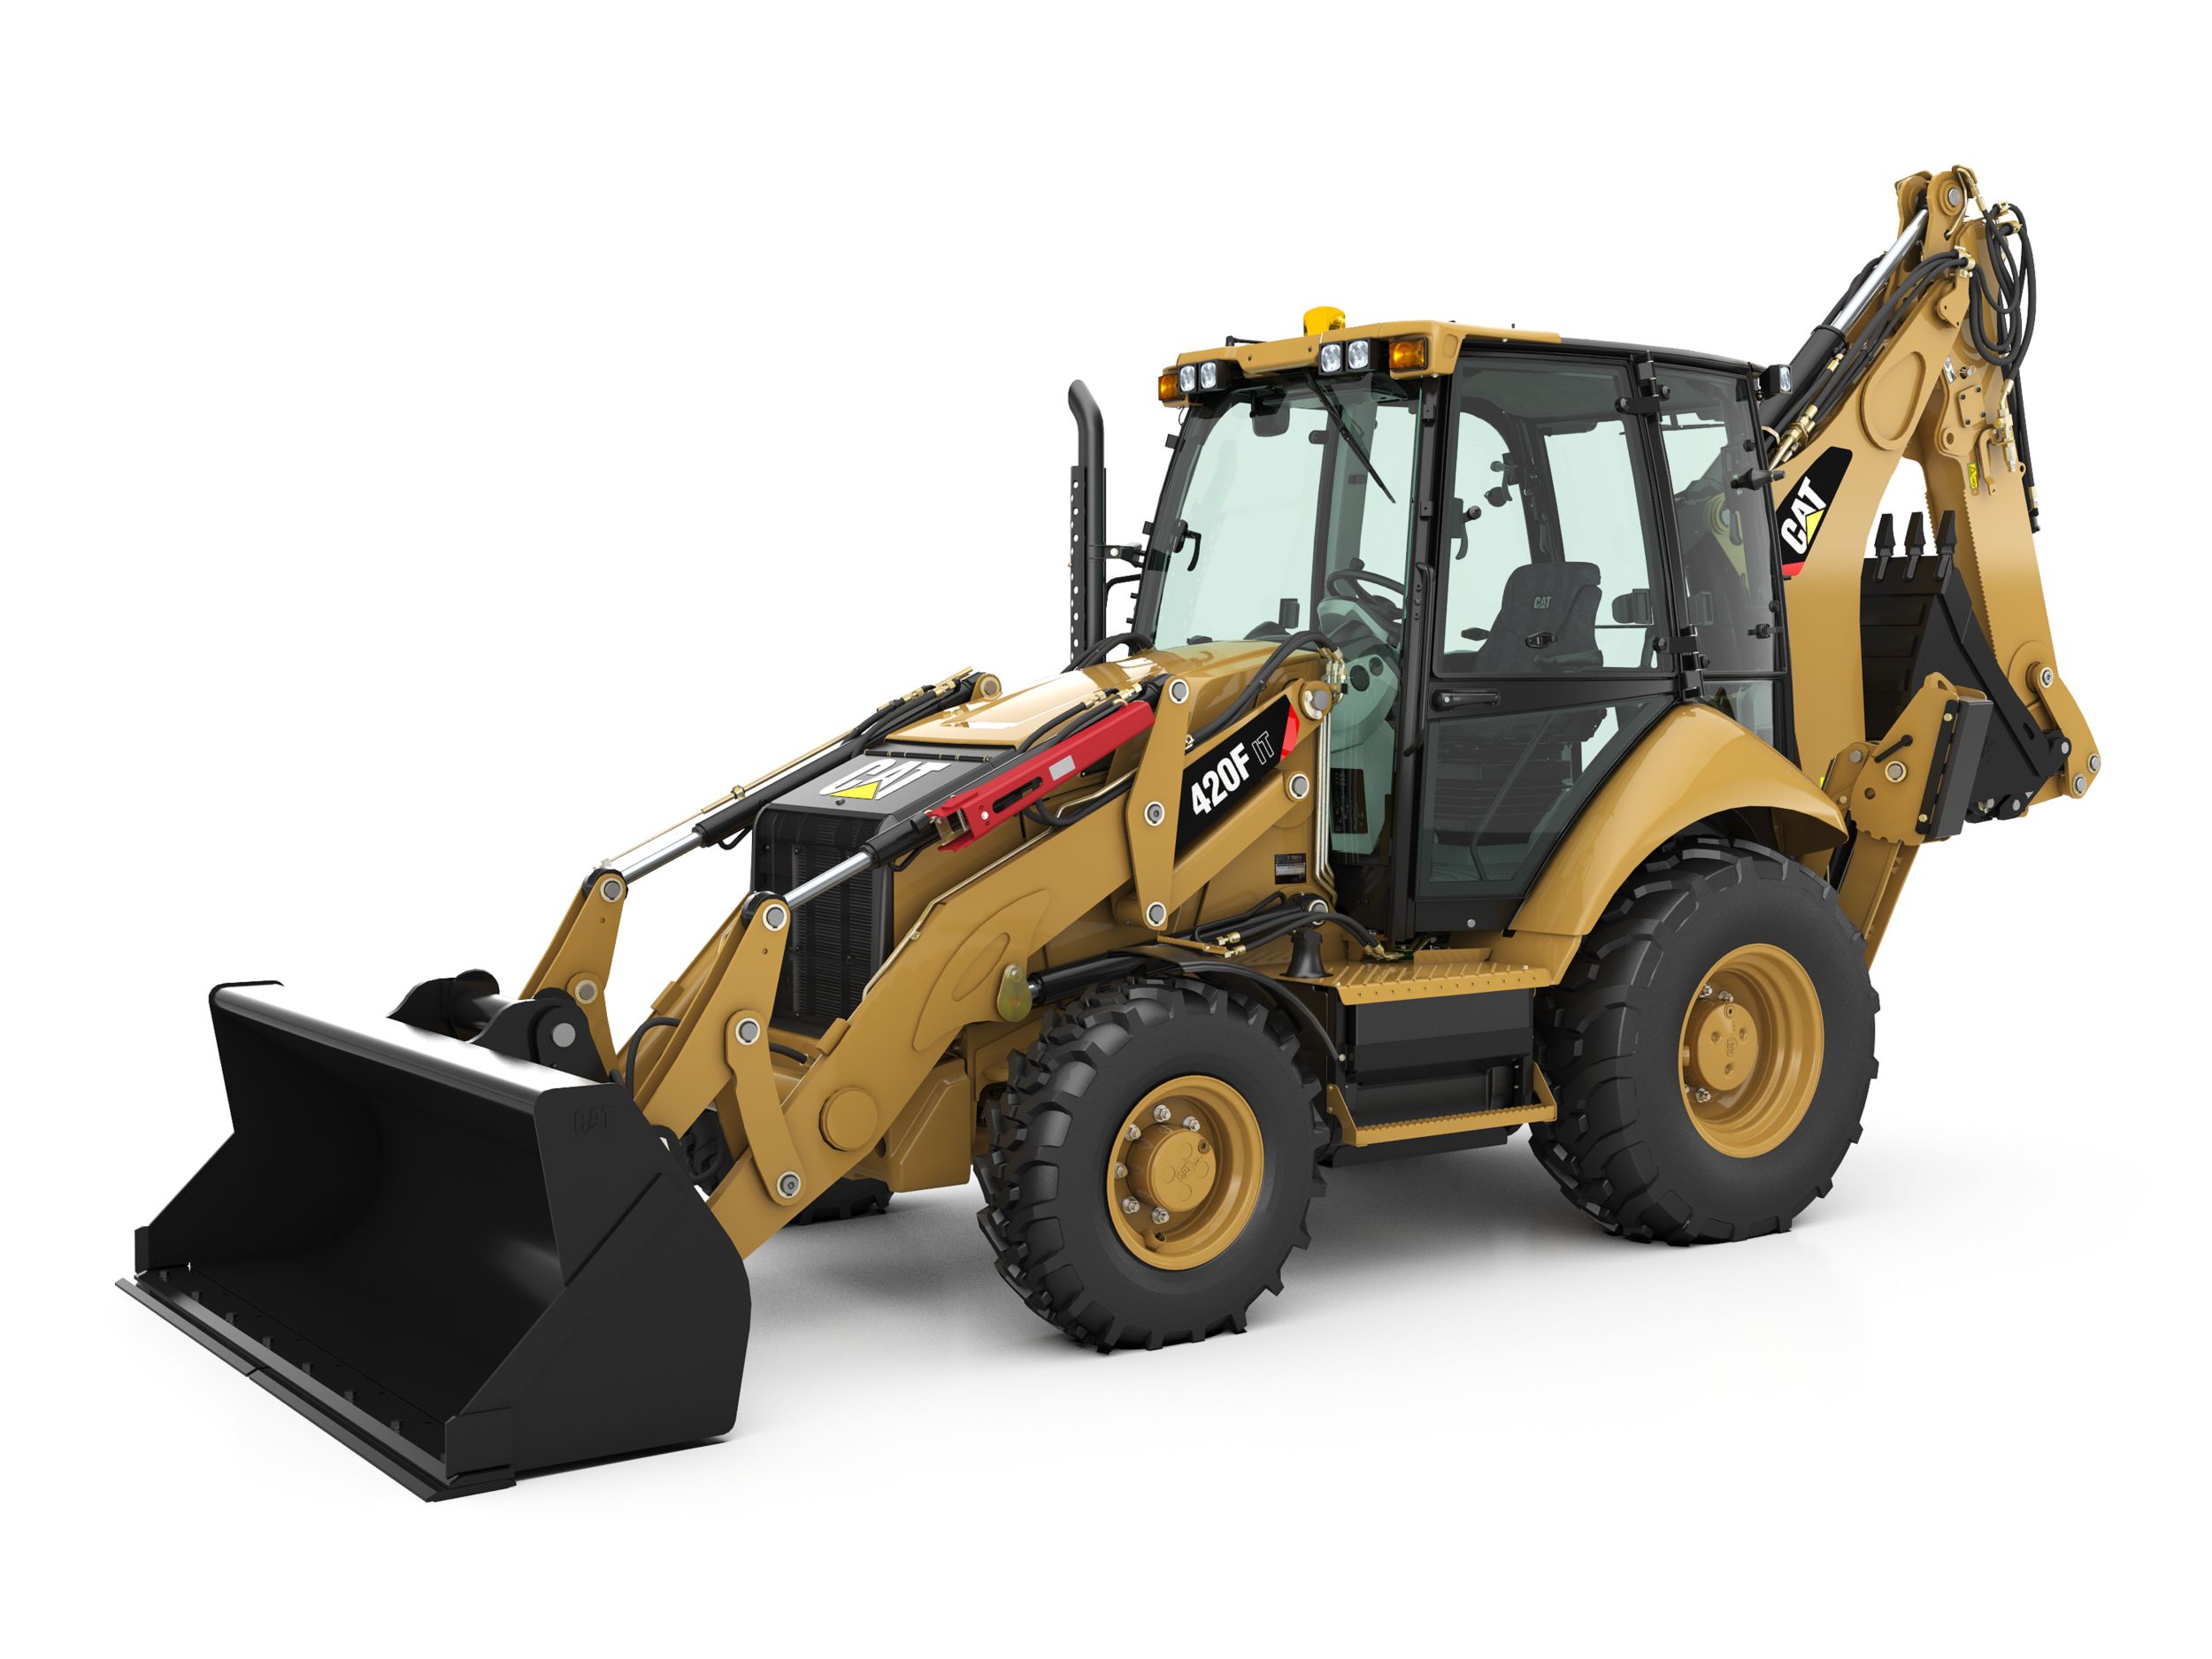 soplo propietario Mucho Retroexcavadoras cargadoras y tractores retroexcavadores | Cat | Caterpillar